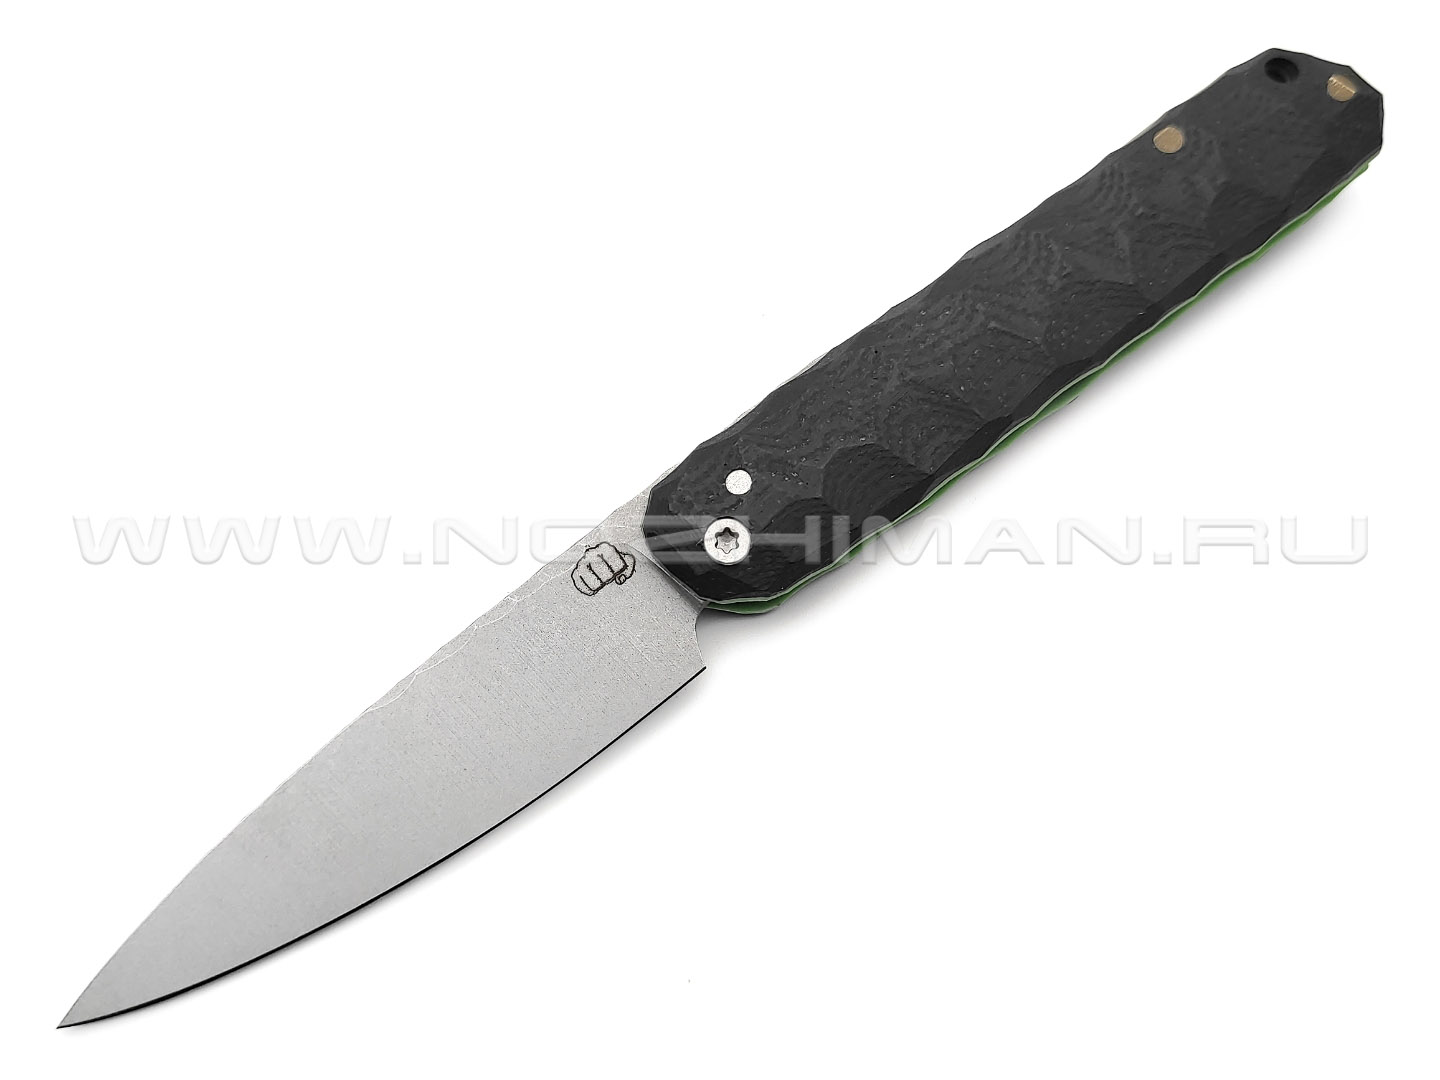 Андрей Кулаков большой фрикционный нож KUL060 сталь 95Х18, рукоять G10 black & green